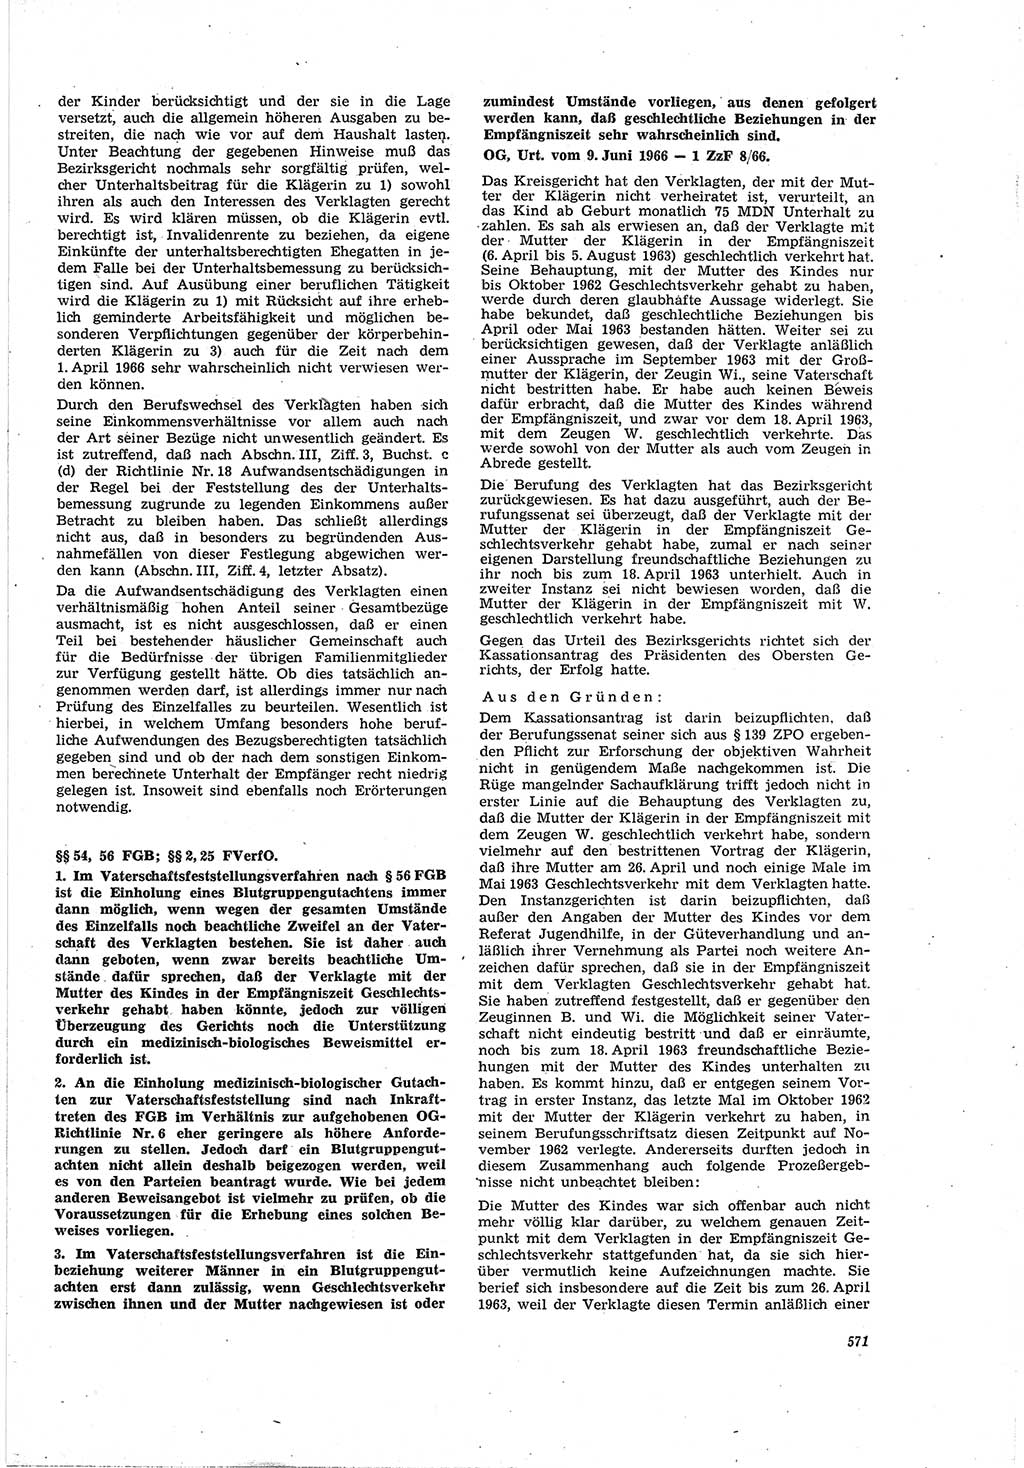 Neue Justiz (NJ), Zeitschrift für Recht und Rechtswissenschaft [Deutsche Demokratische Republik (DDR)], 20. Jahrgang 1966, Seite 571 (NJ DDR 1966, S. 571)